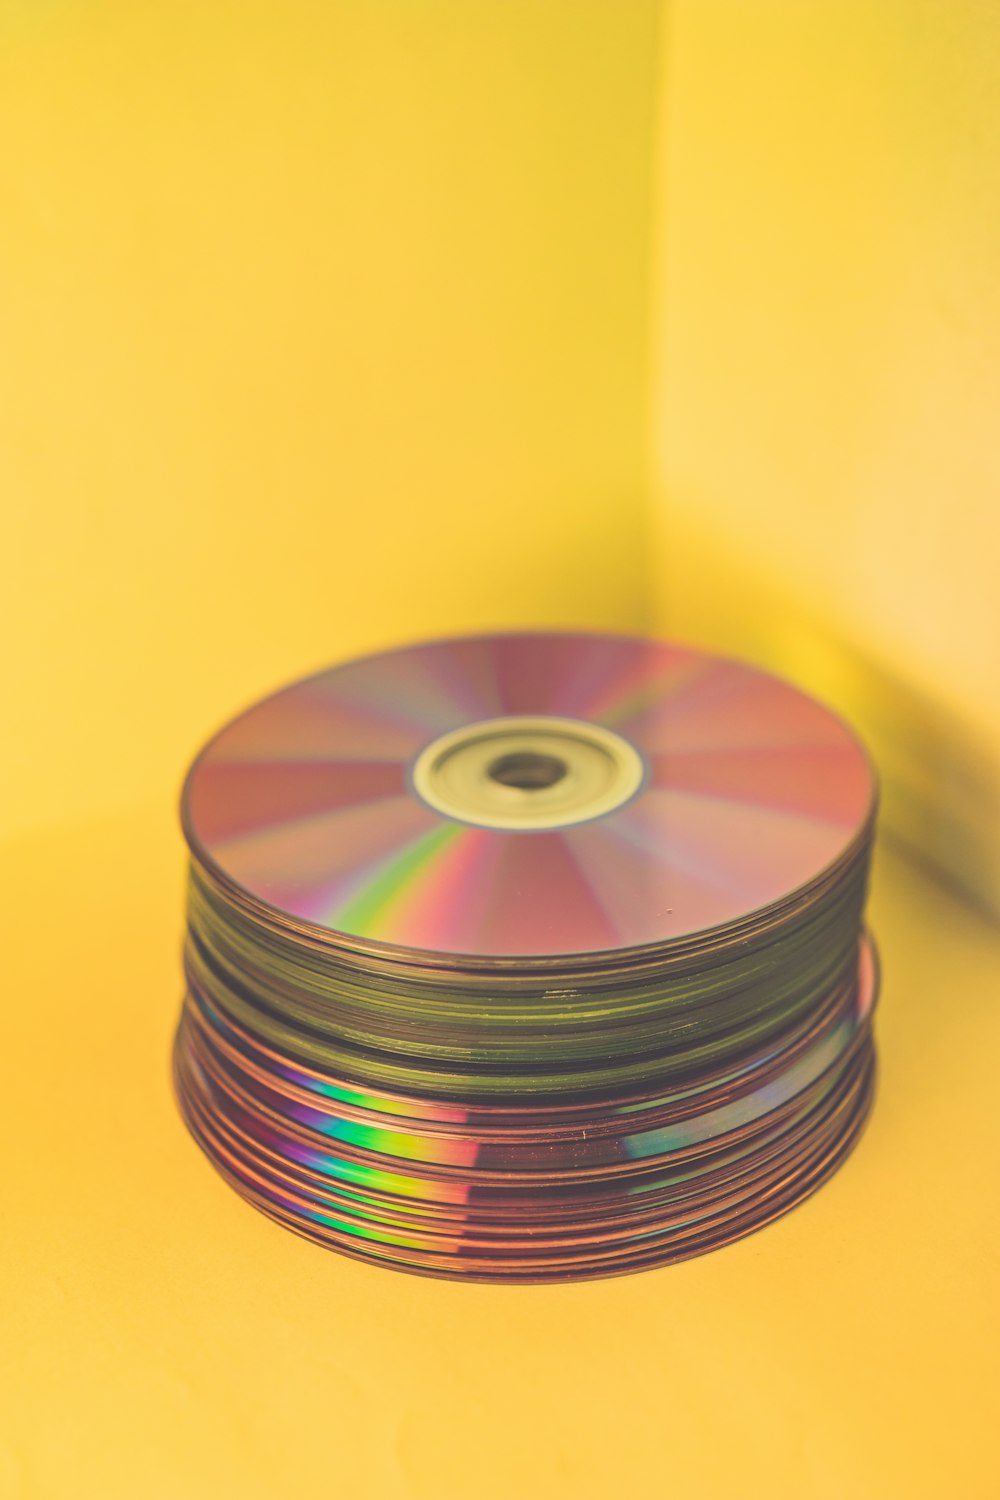 pile of media discs